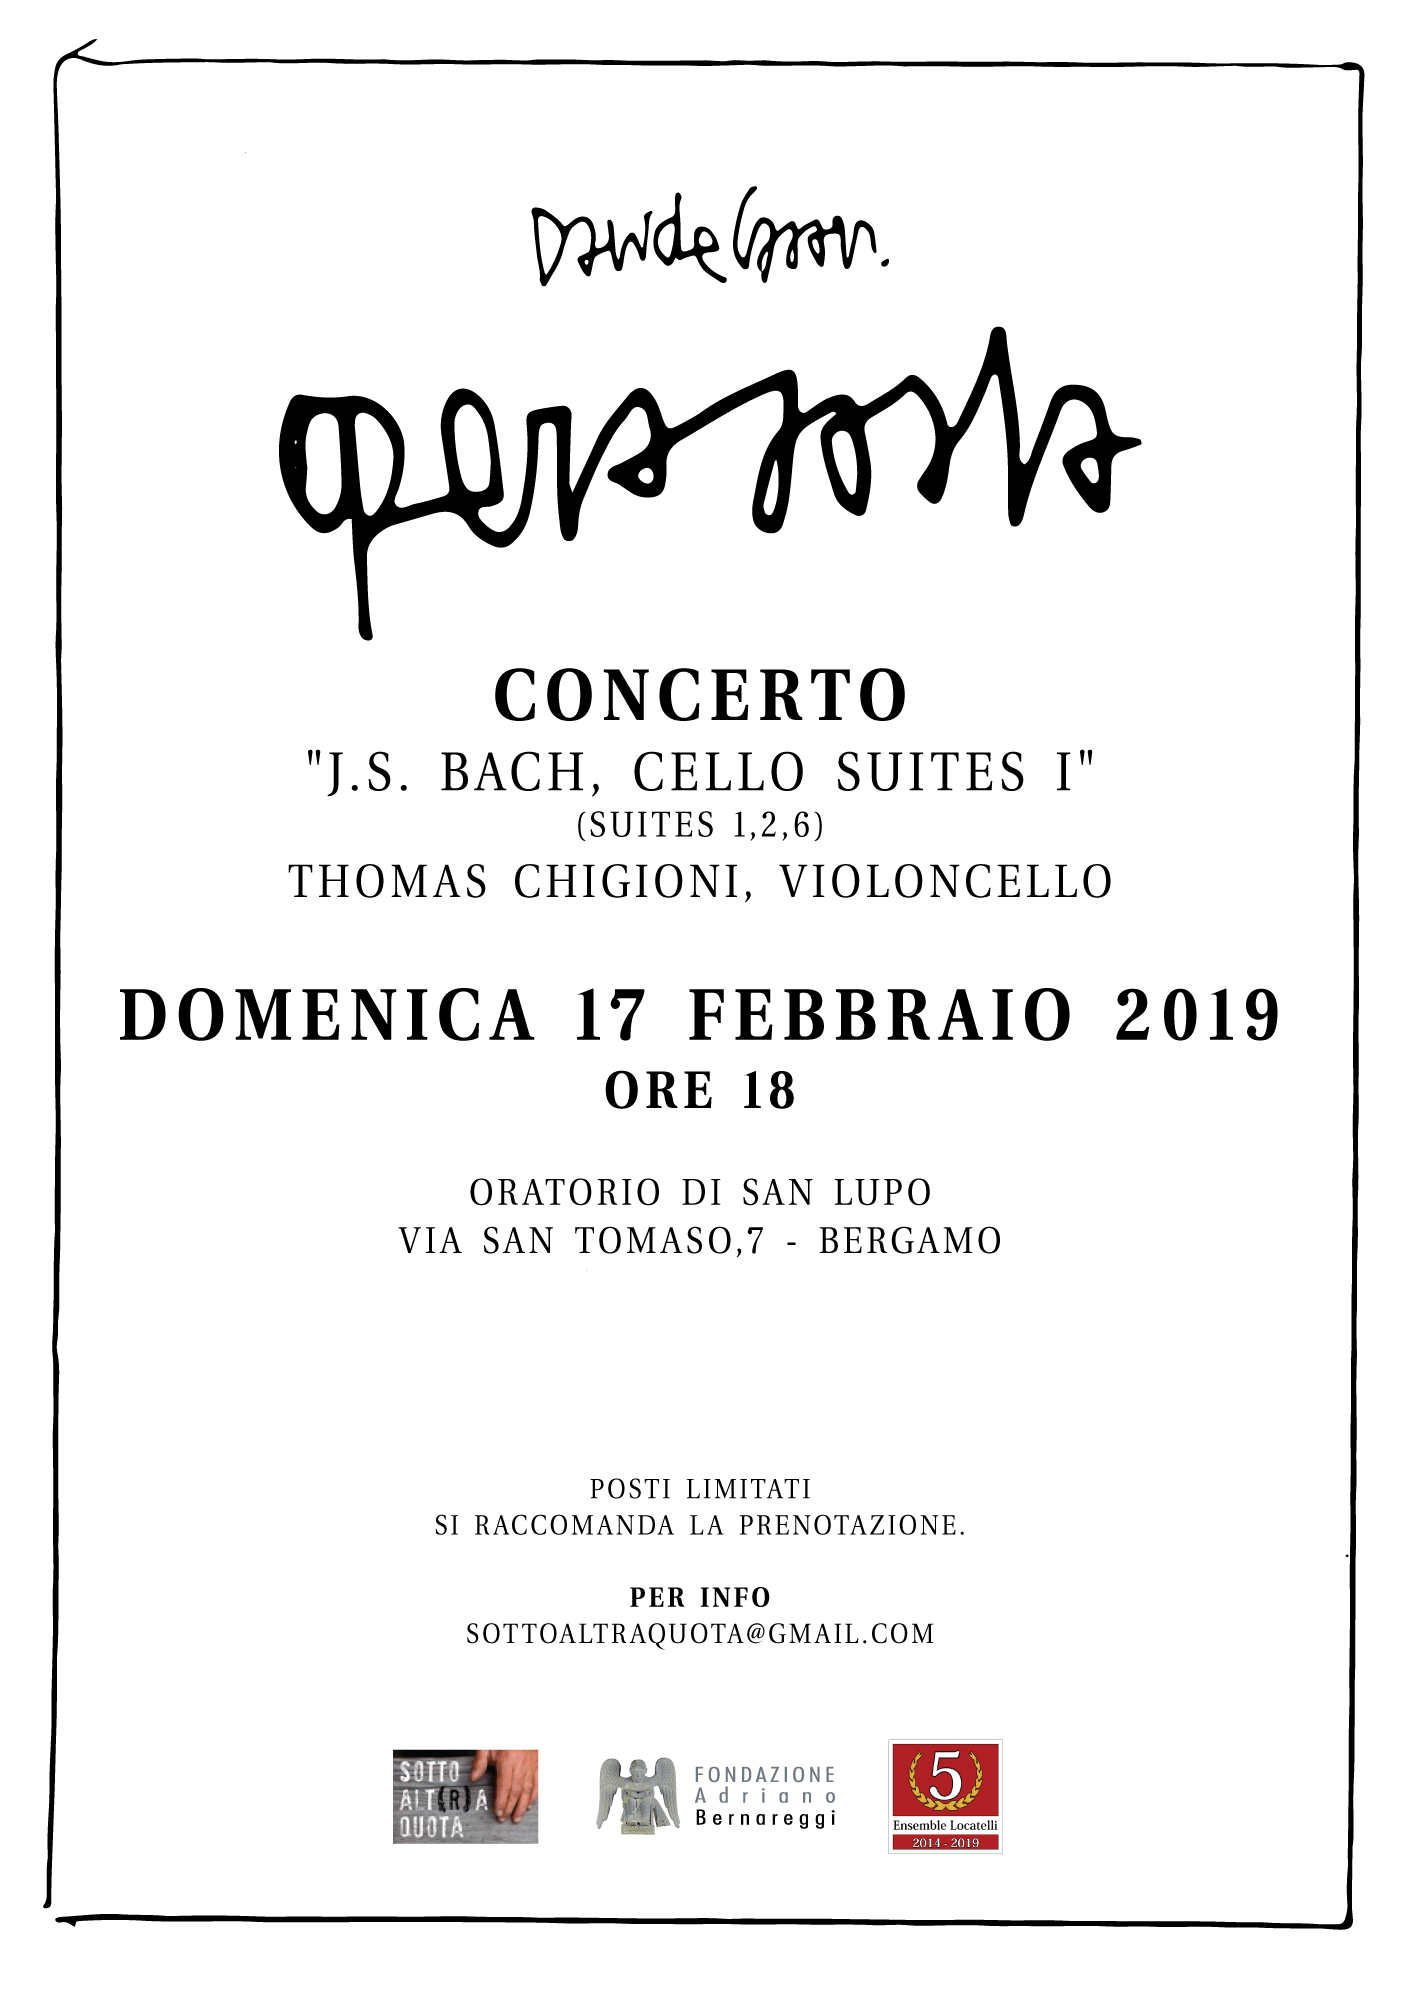 J.S. Bach, cello suites I